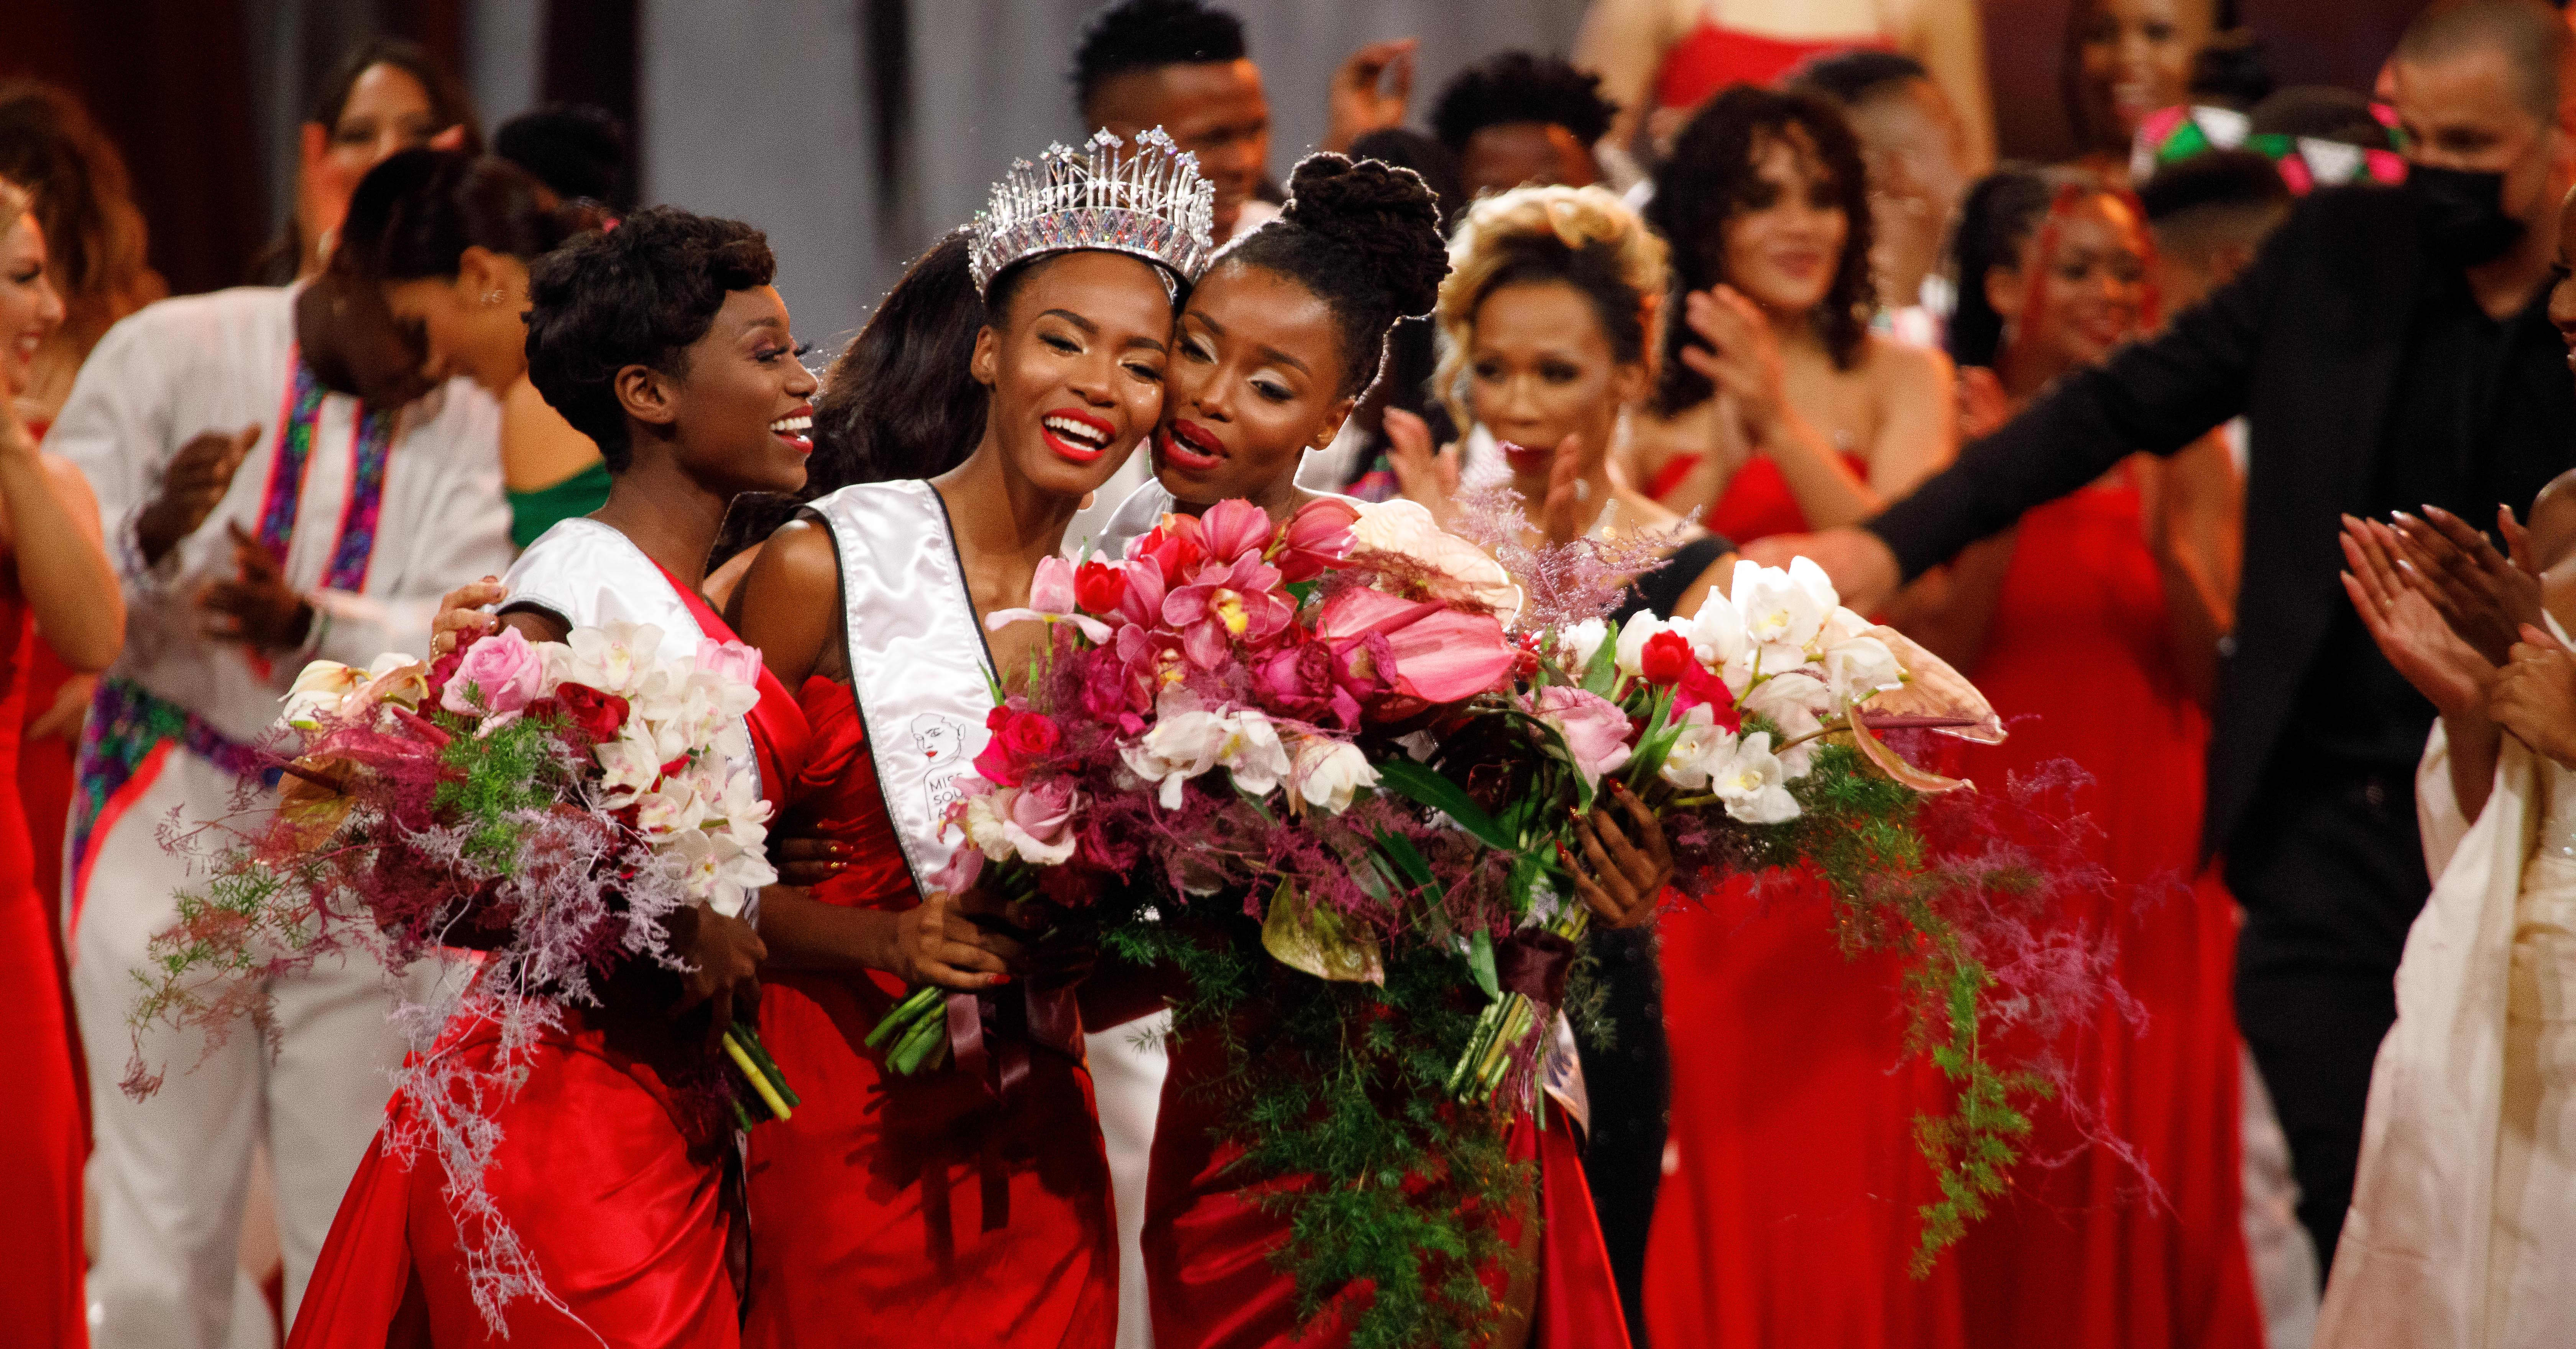 Israel järjestää ensimmäisen kerran Miss Universum -kisan ja boikottihankkeet virisivät – politiikka näkyy kisoissa puolesta ja vastaan